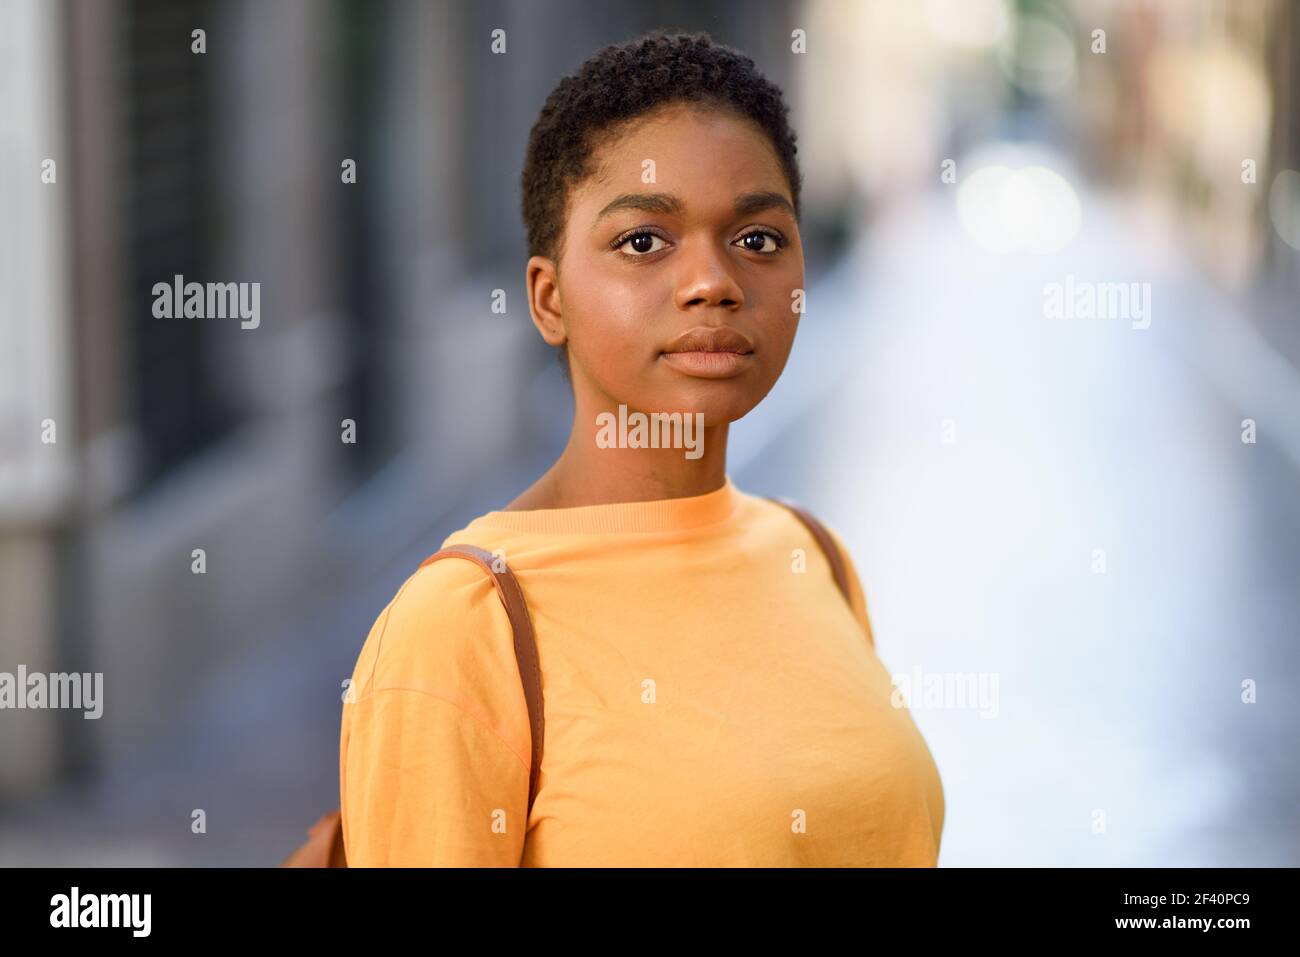 Giovane donna africana che indossa abiti casual guardando la macchina fotografica. Ragazza con capelli molto corti.. Giovane donna africana che indossa abiti casual guardando la macchina fotografica. Foto Stock